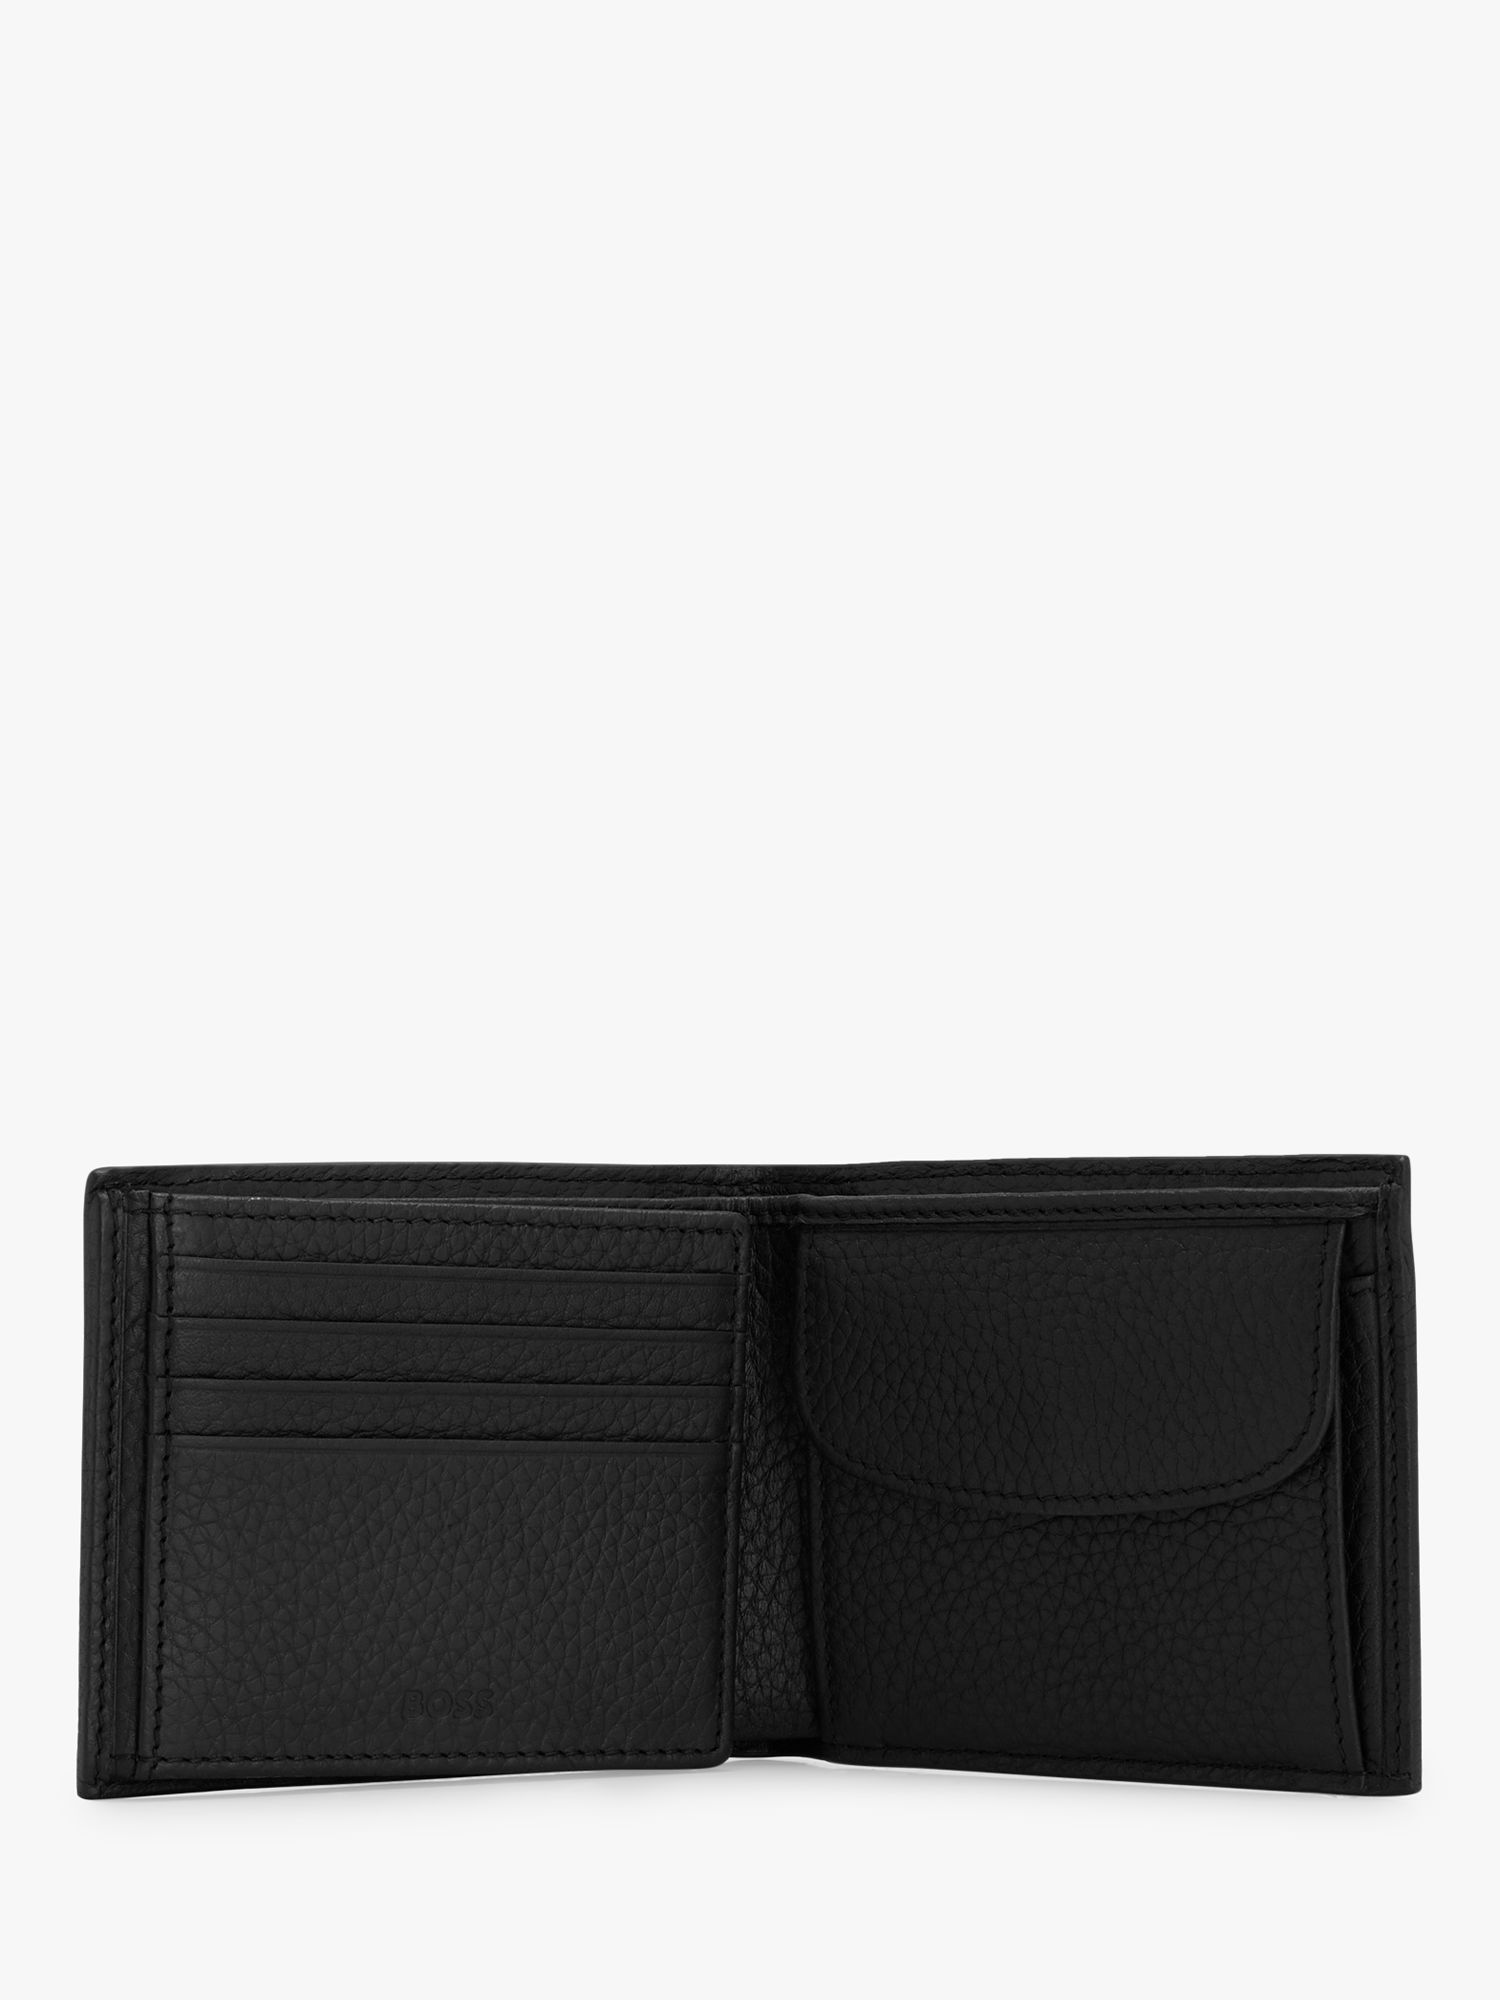 BOSS Crosstown Pebble Grain Trifold Wallet, Black, One Size